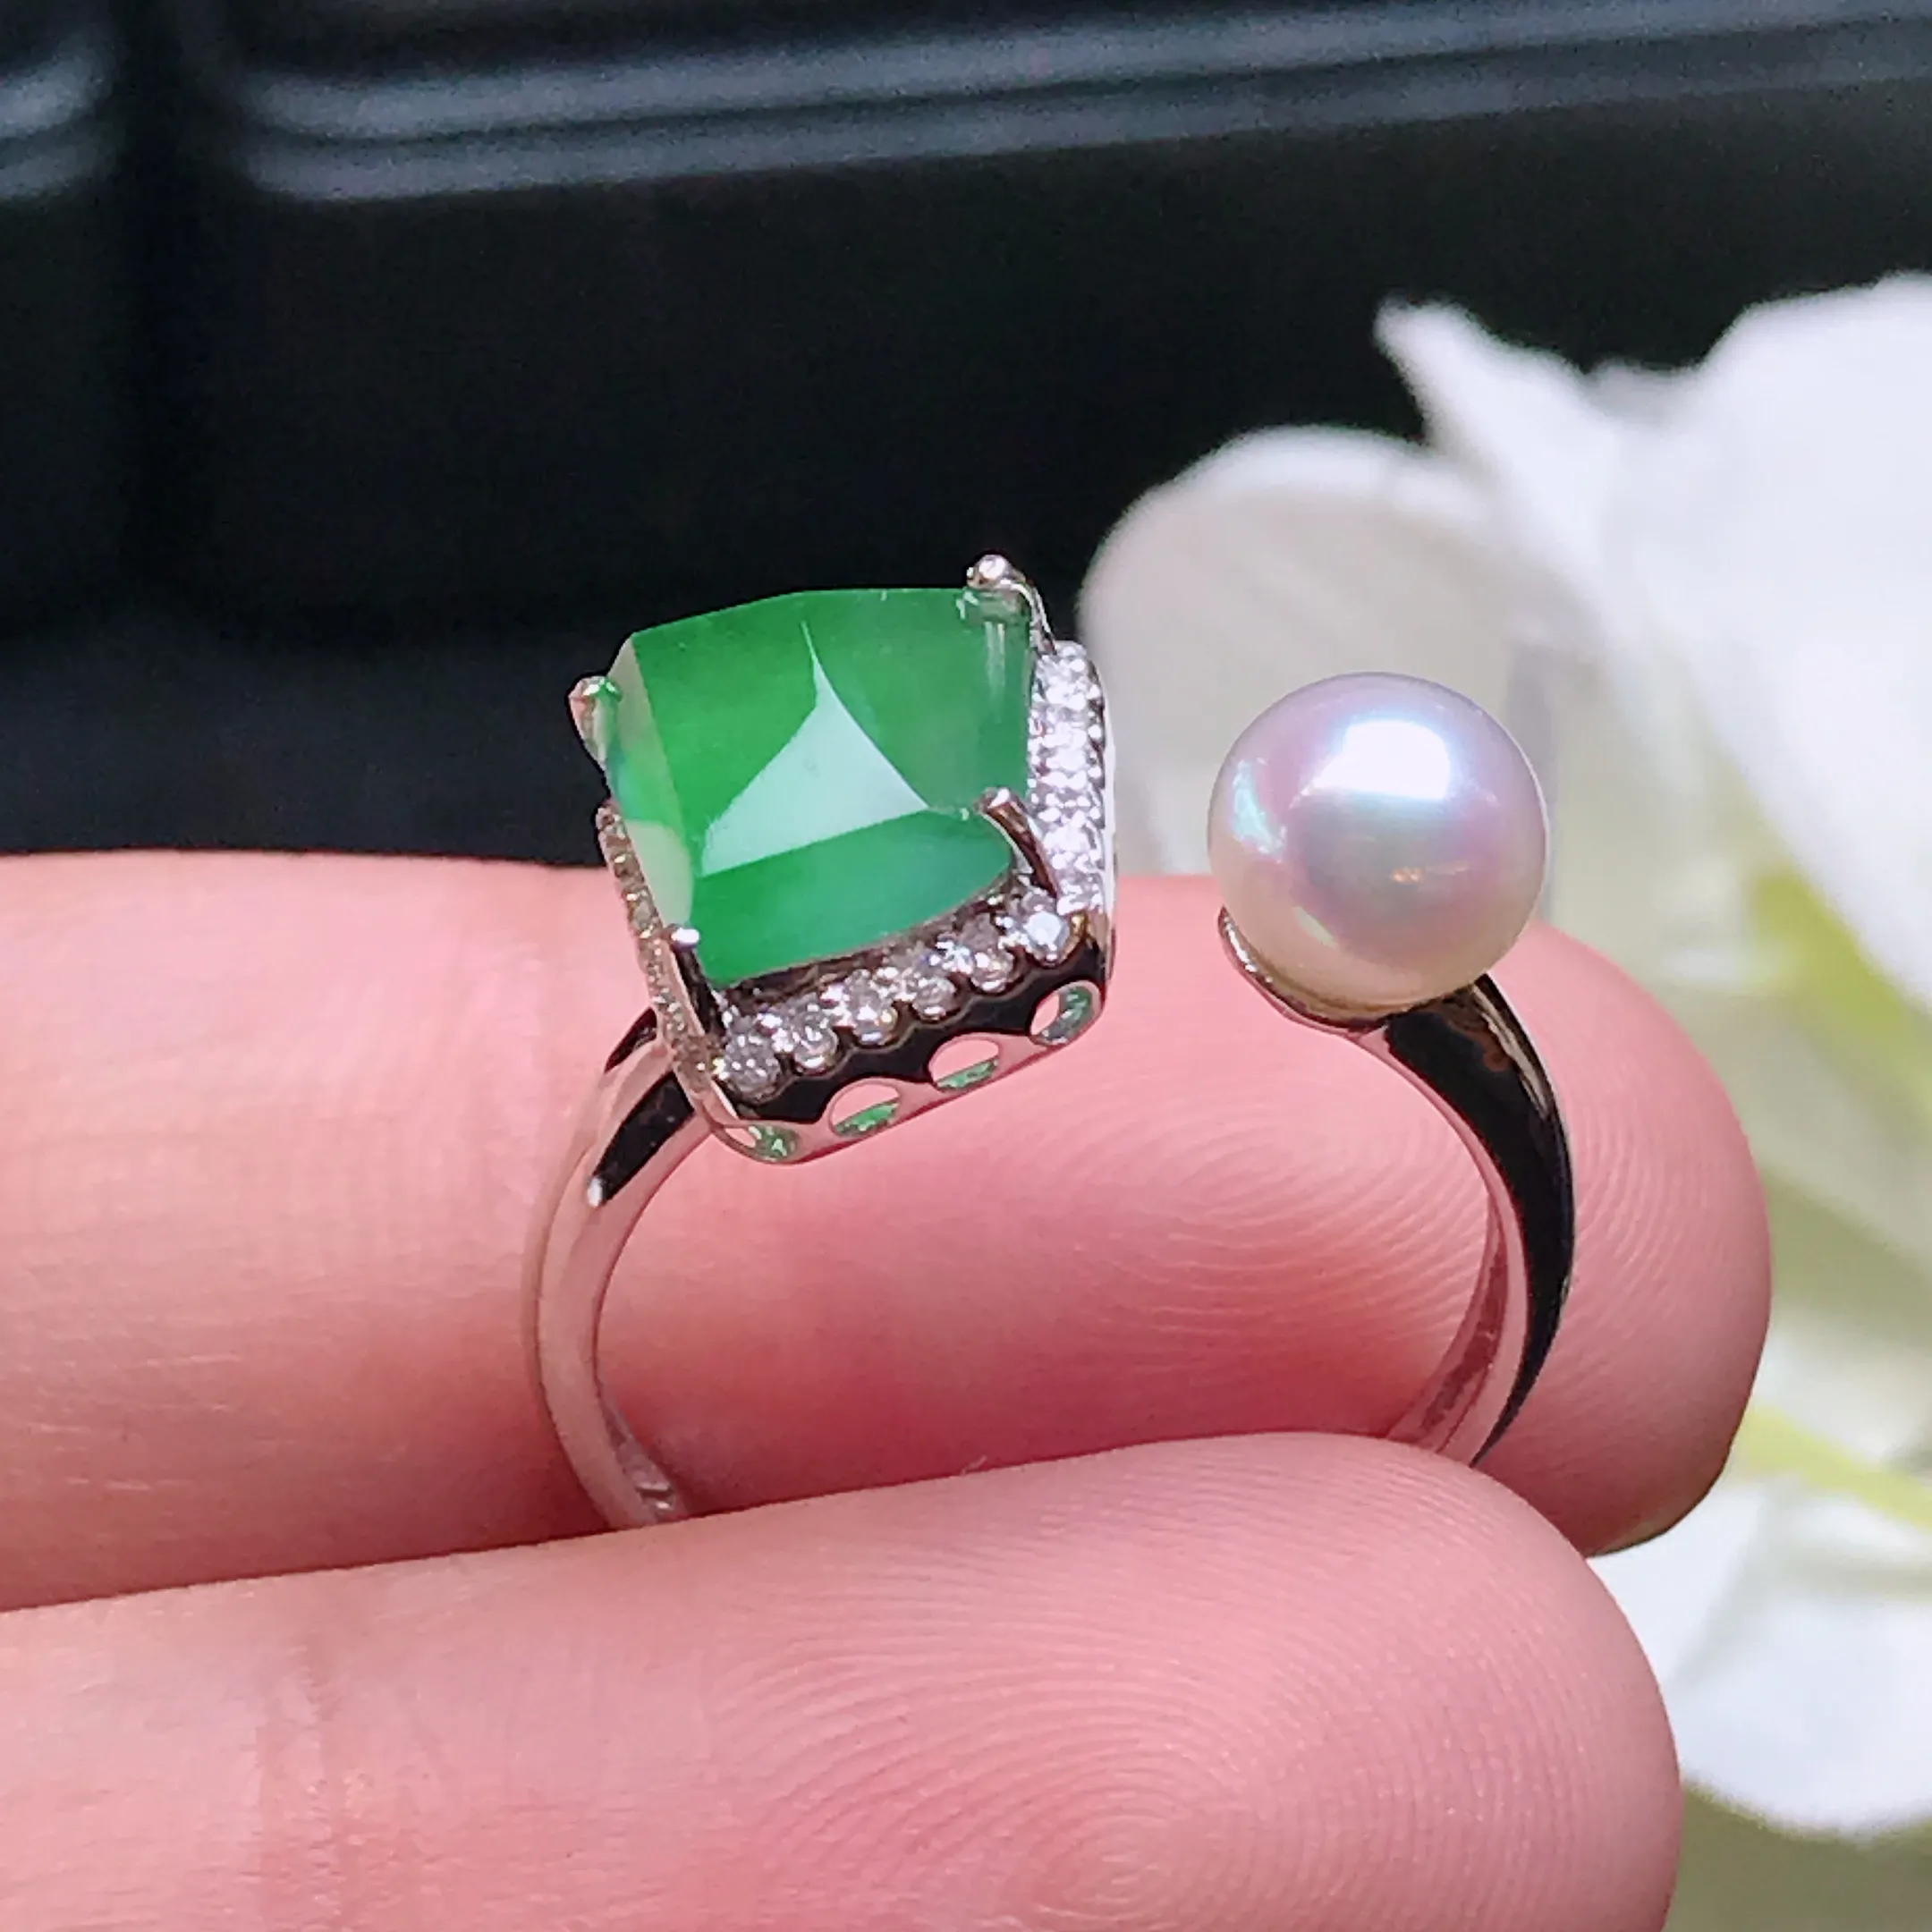 严选推荐戒指，老坑冰种满色绿戒指，18k金钻镶嵌而成，简约时尚，品相佳，佩戴效果佳，尽显气质。